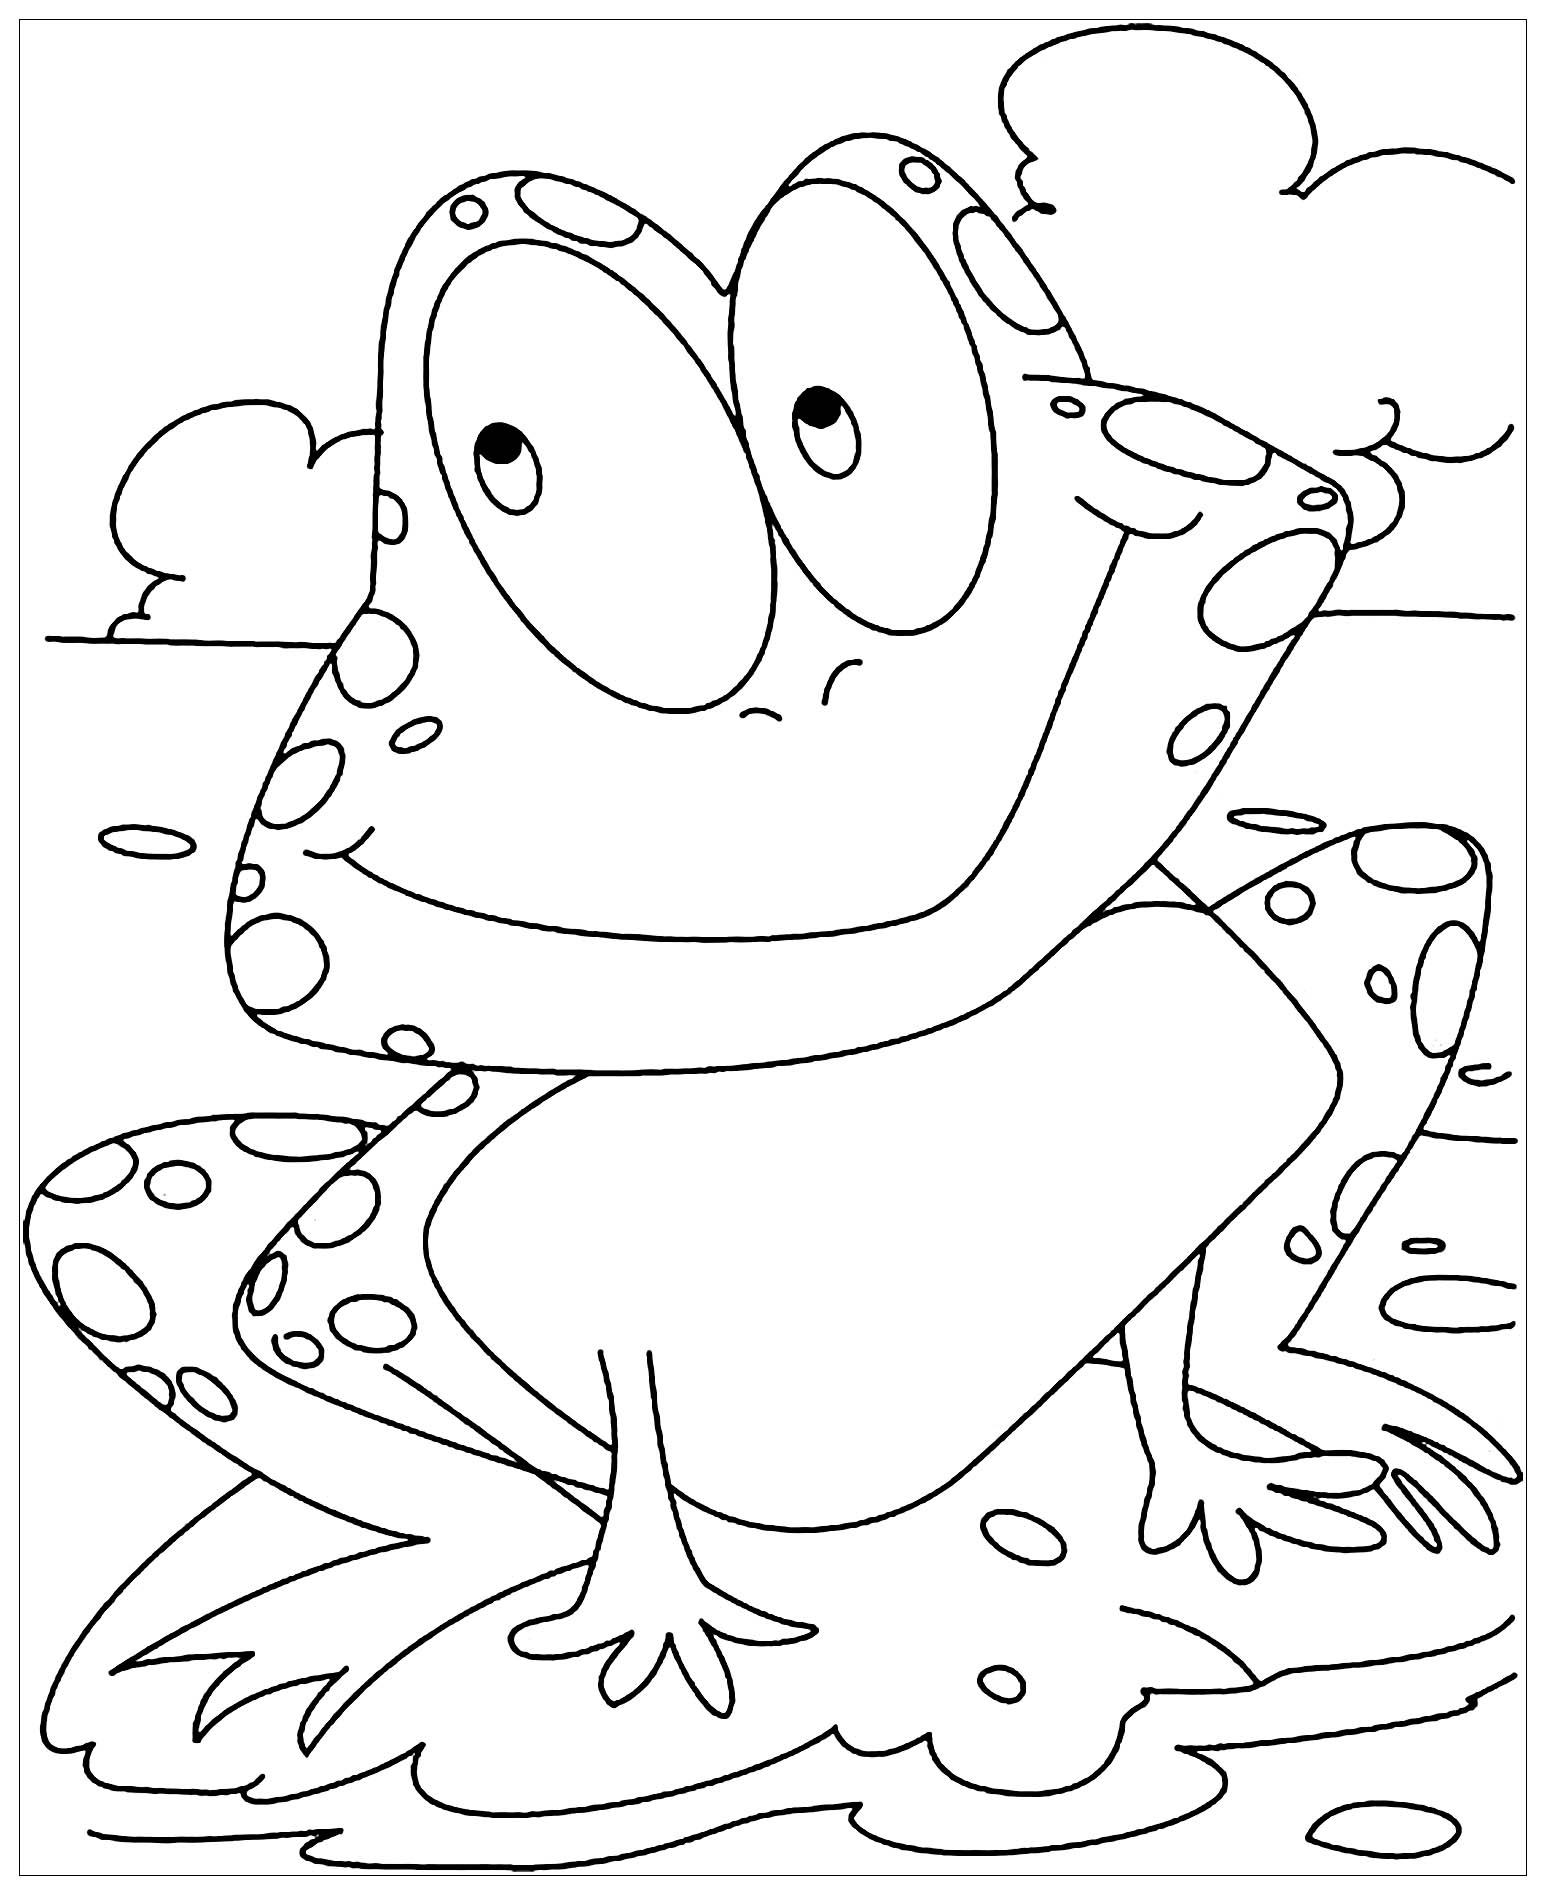 Coloriage amusant de grenouille à imprimer et colorier